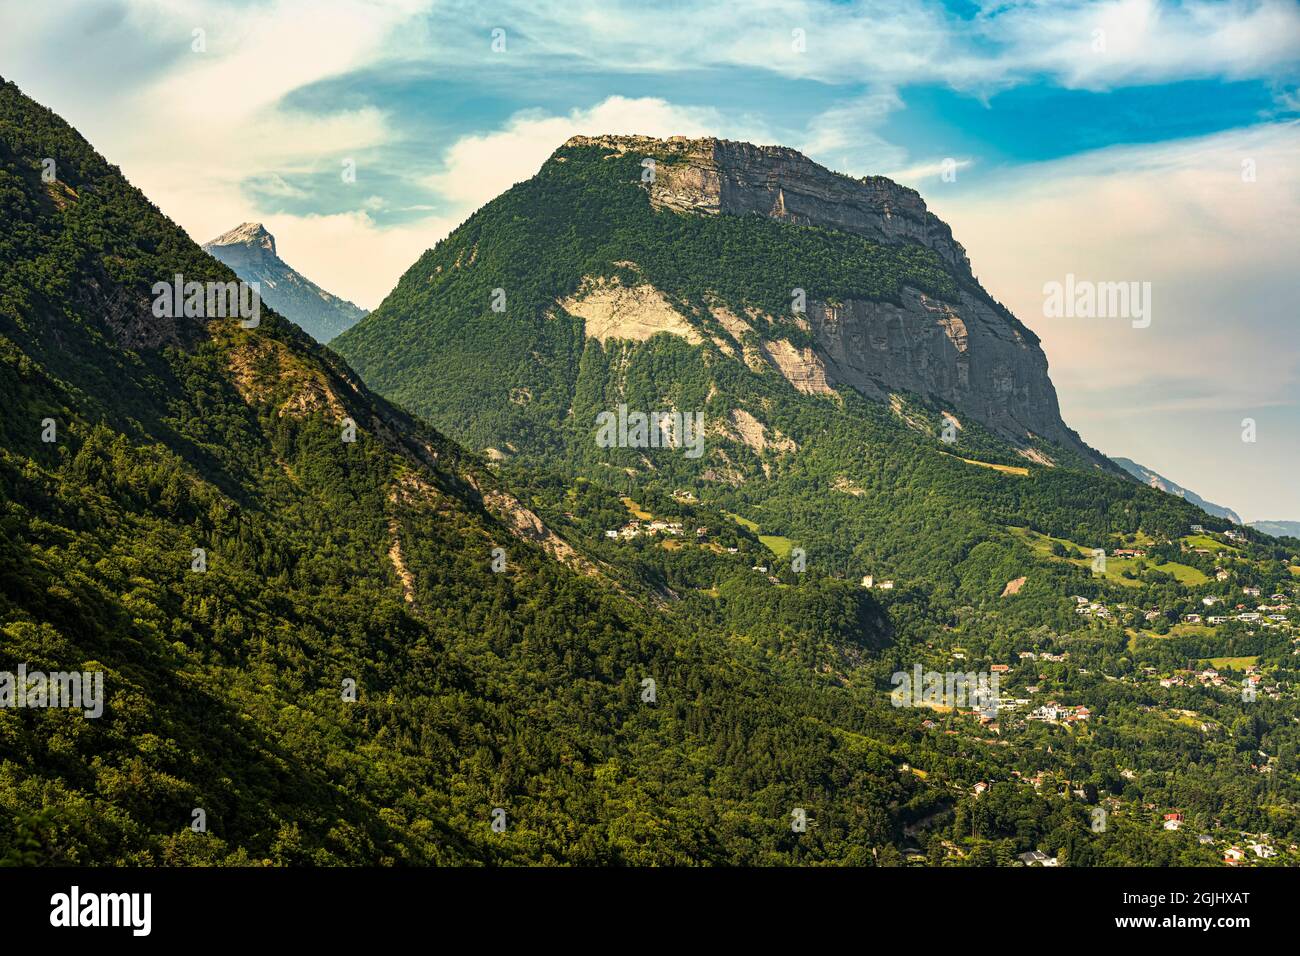 Las crestas de la cumbre del Mont Saint-Eynard. La cumbre forma parte de la cordillera de Chartreuse en los Alpes. Grenoble, región de Auvernia-Rhône-Alpes, Francia Foto de stock